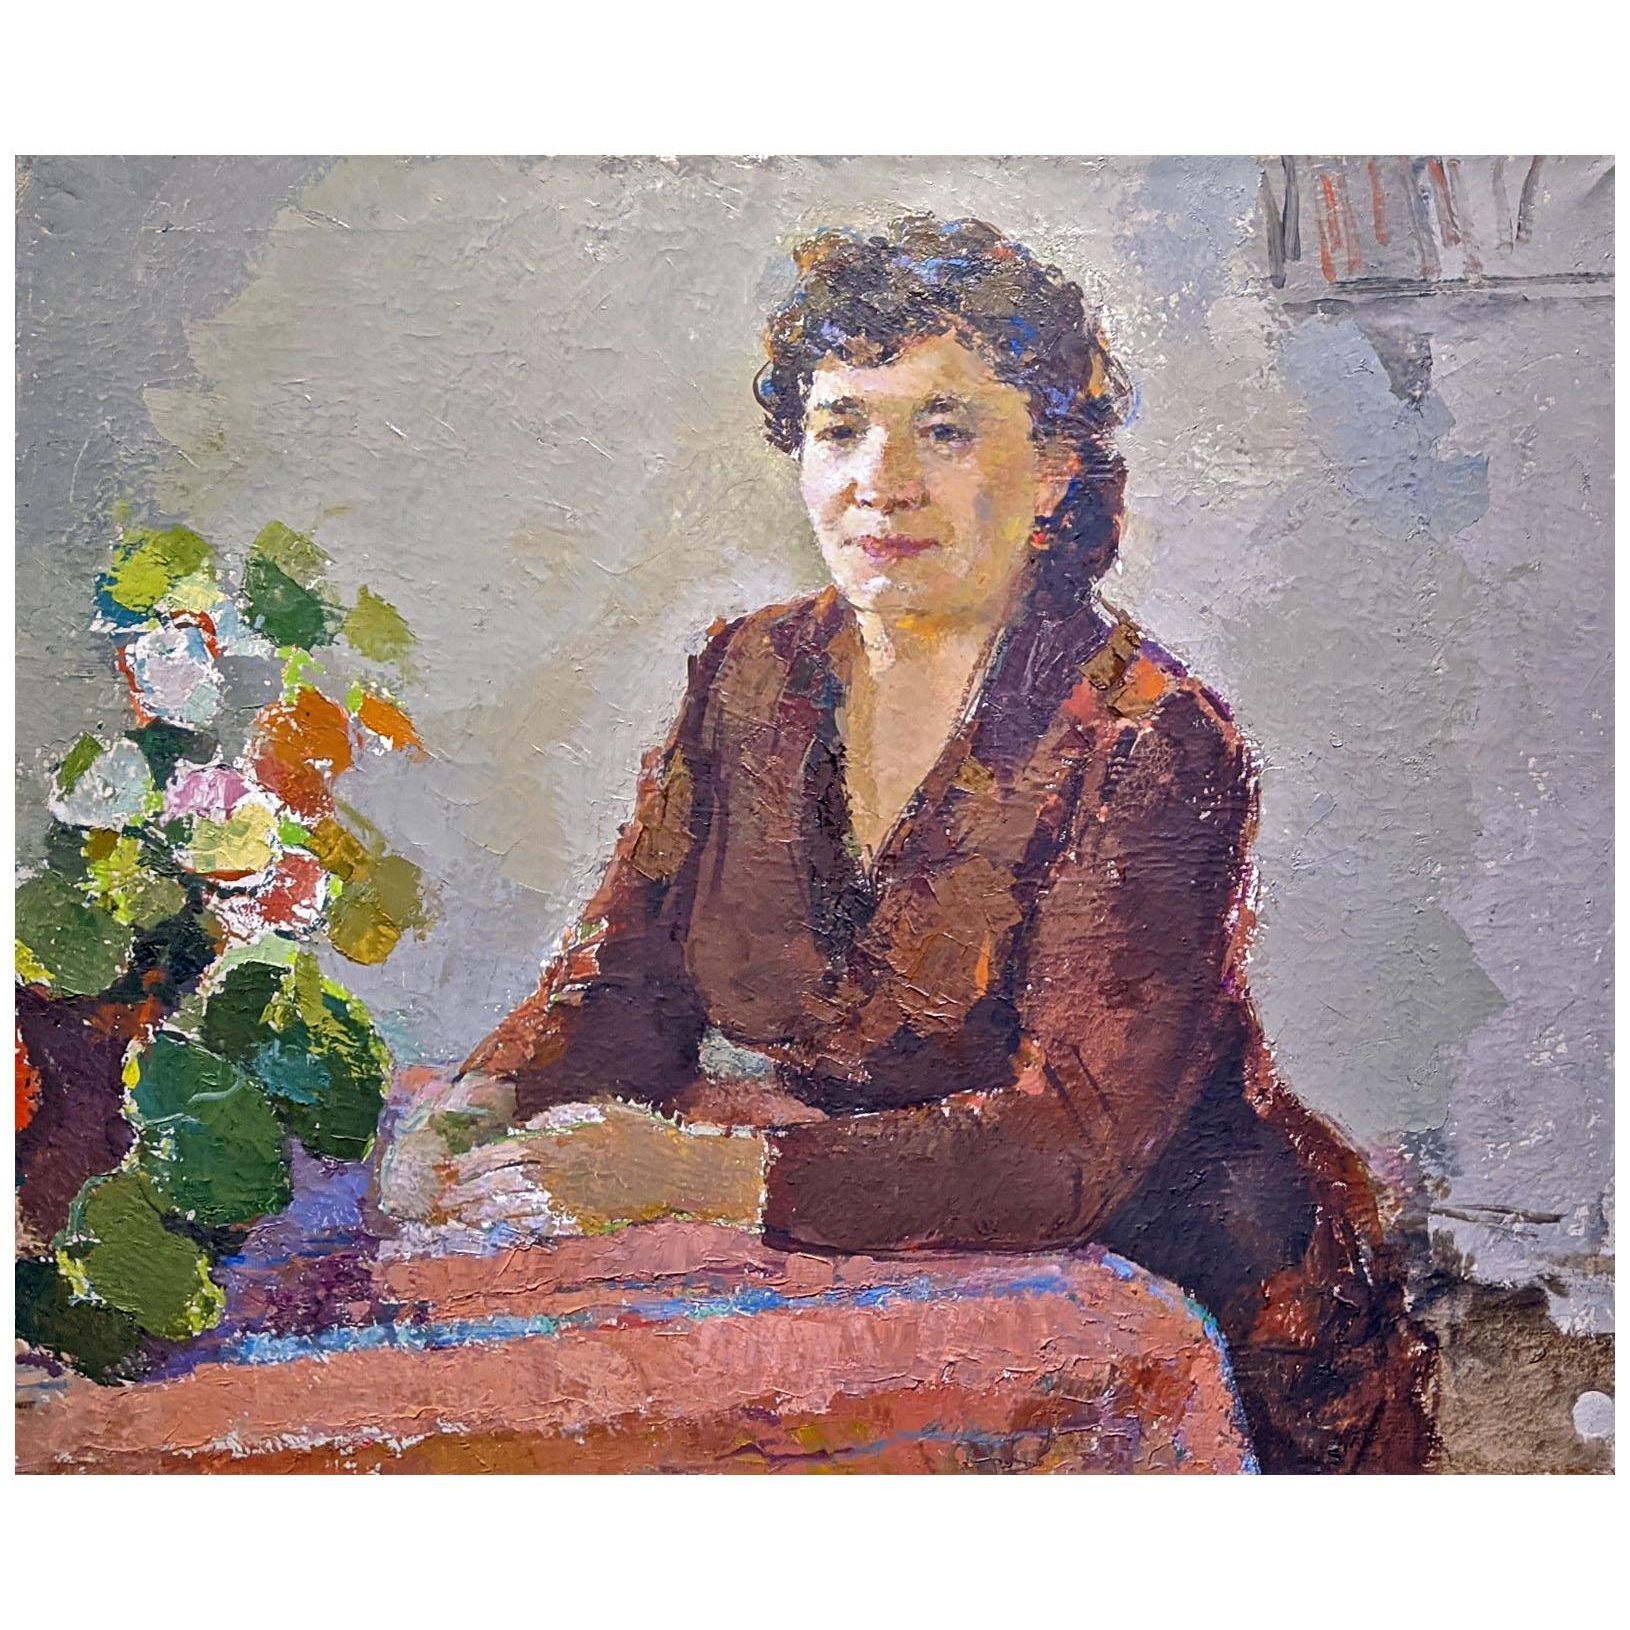 Баки Урманче. Венера Ихсанова. 1980-е. Галерея Хазинэ, Казань